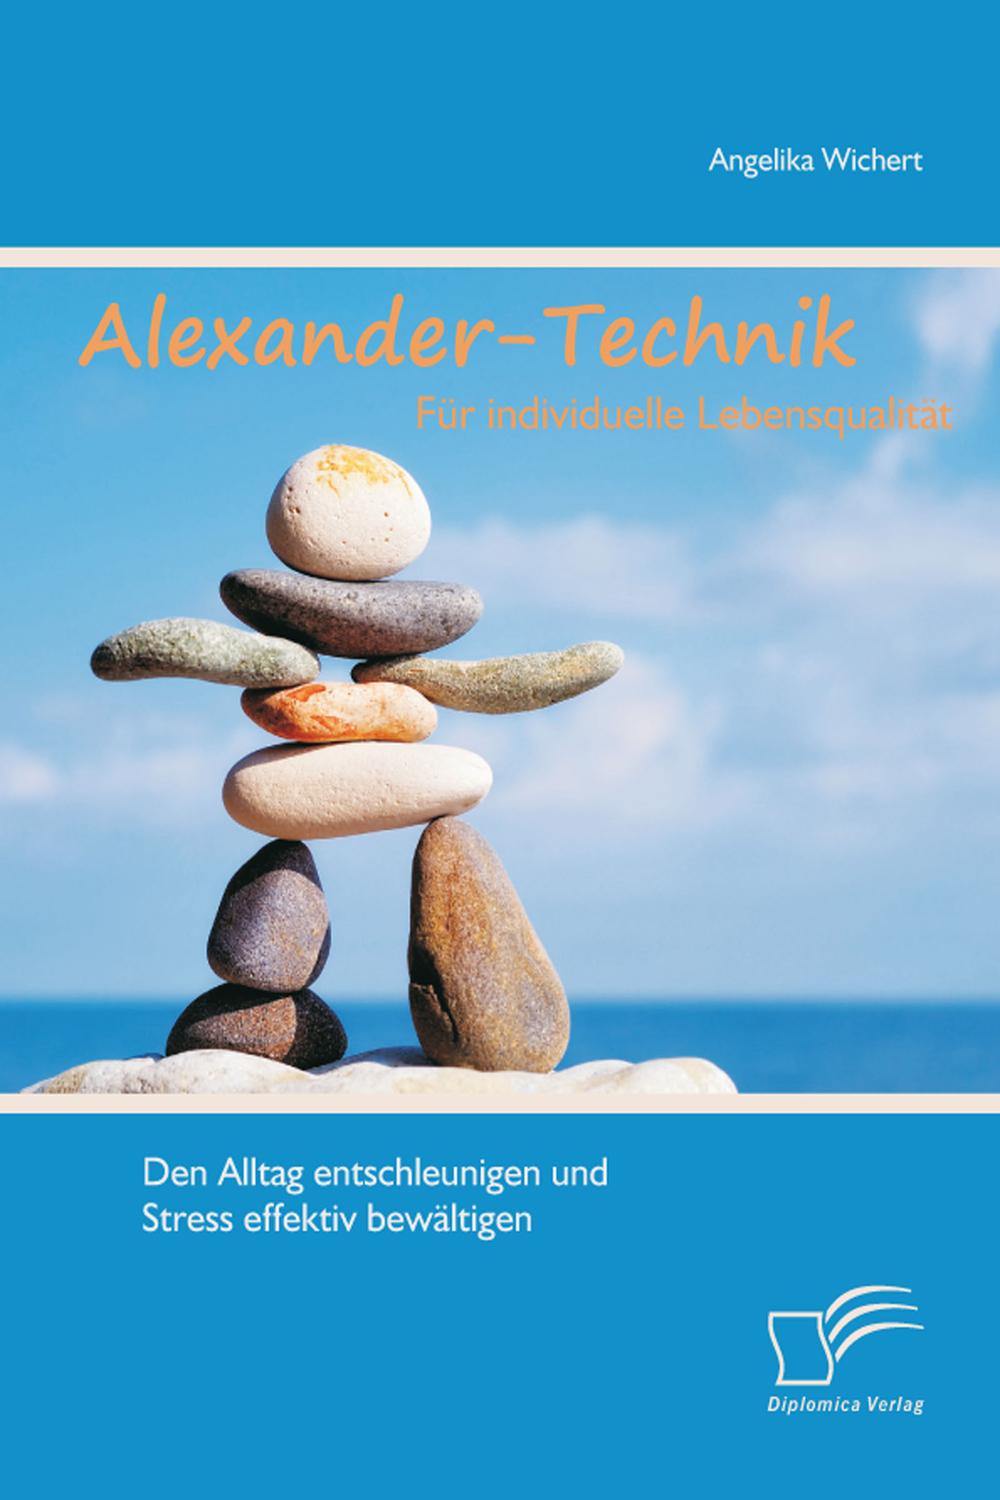 Alexander-Technik für individuelle Lebensqualität: Den Alltag entschleunigen und Stress effektiv bewältigen - Angelika Wichert